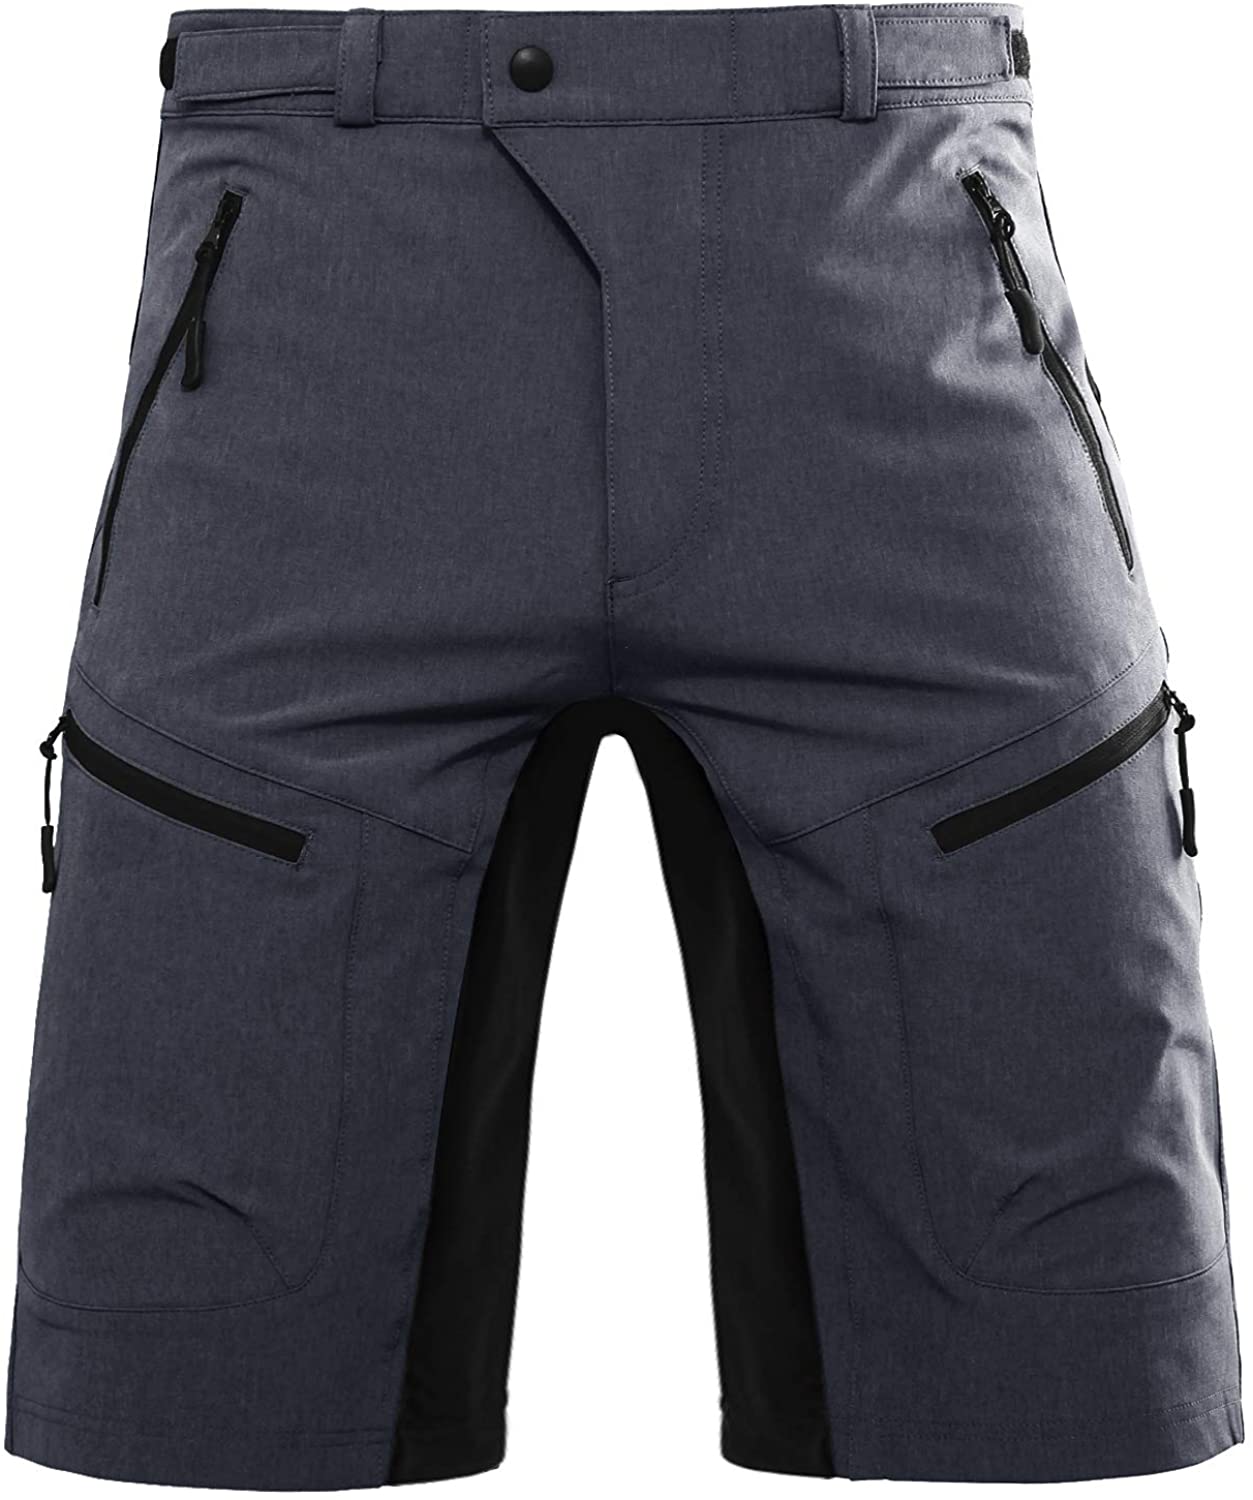 Hiauspor Men's Mountain Bike Shorts MTB Cycling Biking Short with Zipper  Pockets  eBay